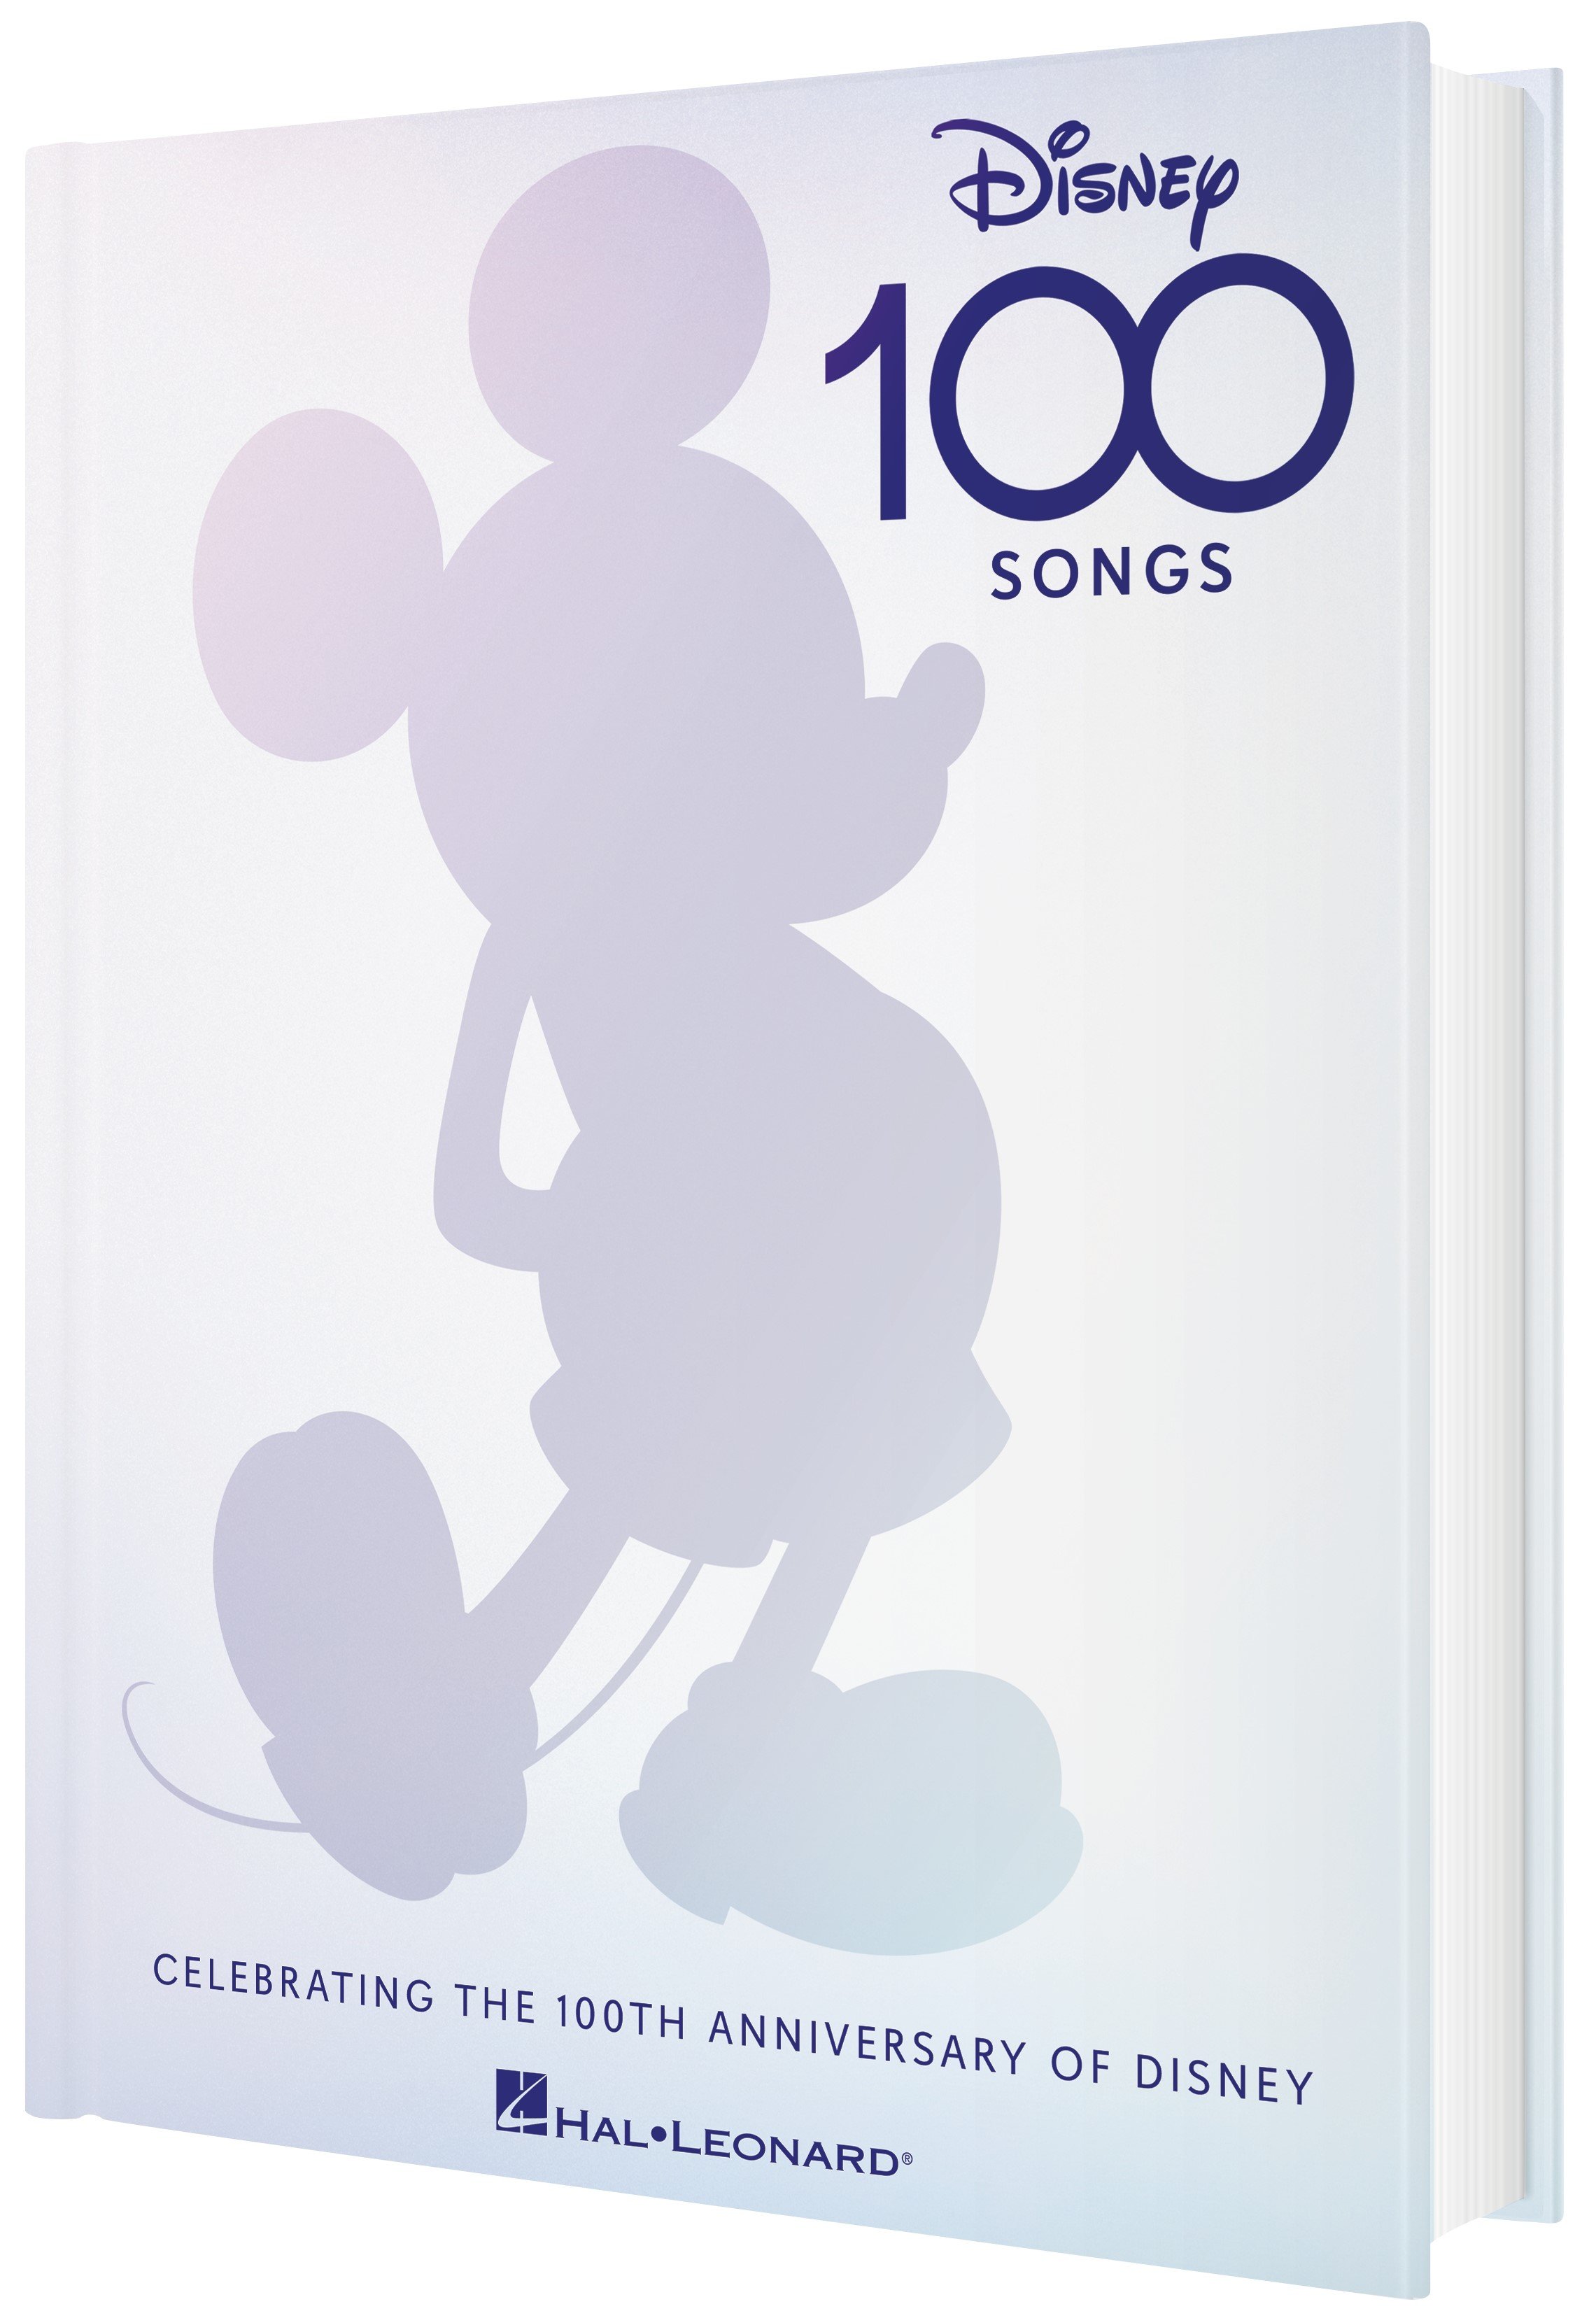 Disney 100 Songs image